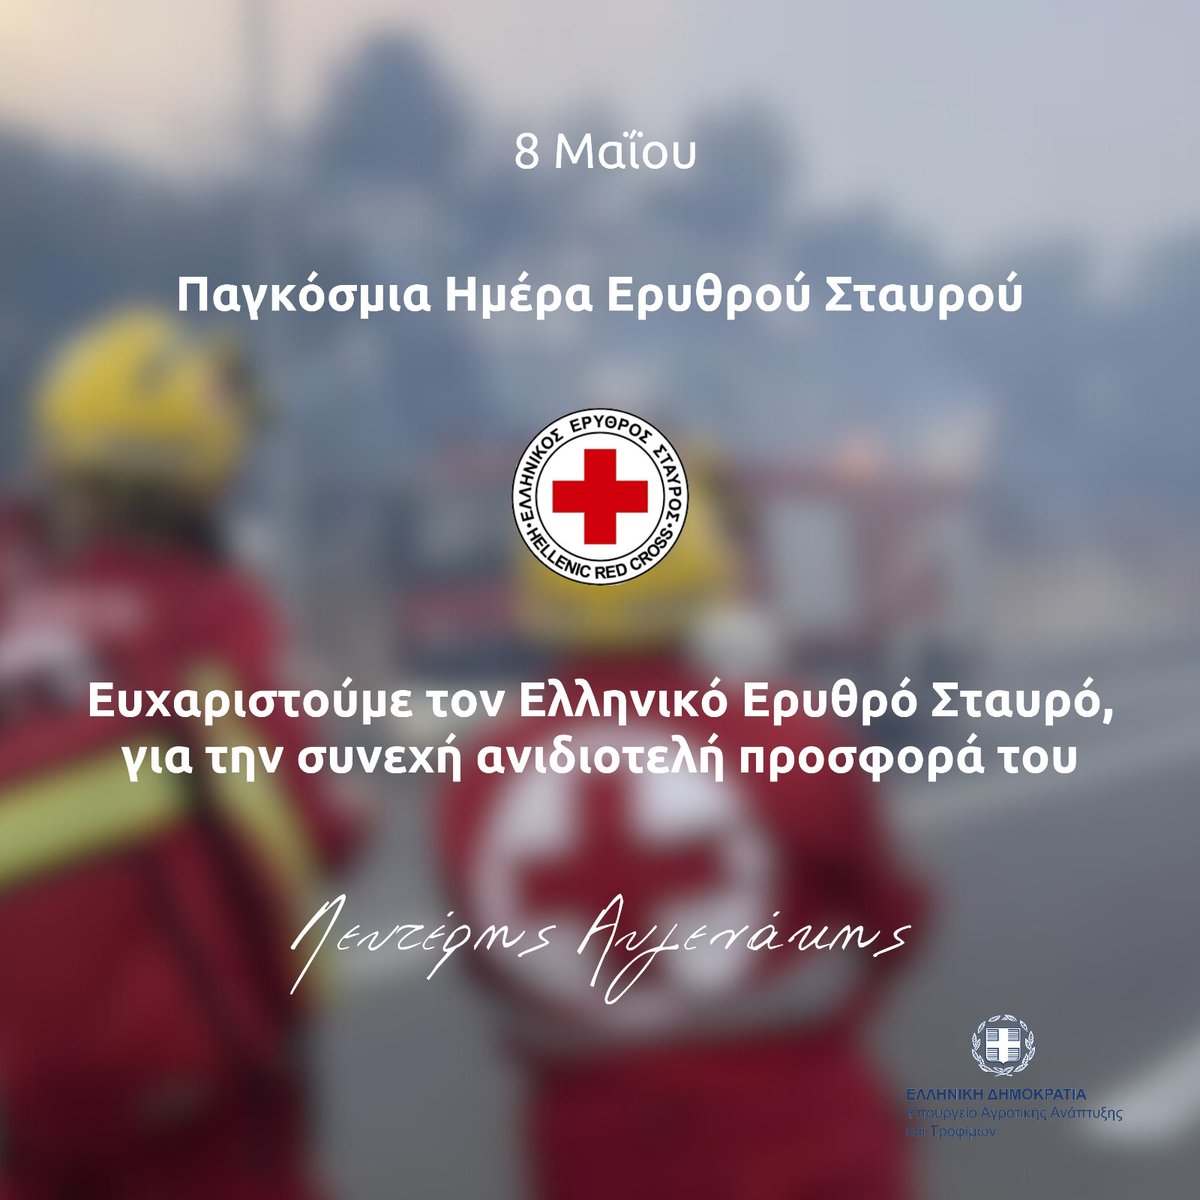 Σήμερα, Παγκόσμια Ημέρα του Ερυθρού Σταυρού τιμούμε την ανιδιοτελή προσφορά του Ελληνικού Ερυθρού Σταυρού στην χώρα μας εδώ και σχεδόν 150 χρόνια. @greekredcross Τα στελέχη, οι εθελοντές, οι νοσηλευτές και οι Σαμαρείτες – Διασώστες του Ερυθρού Σταυρού αποτελούν λαμπερό…